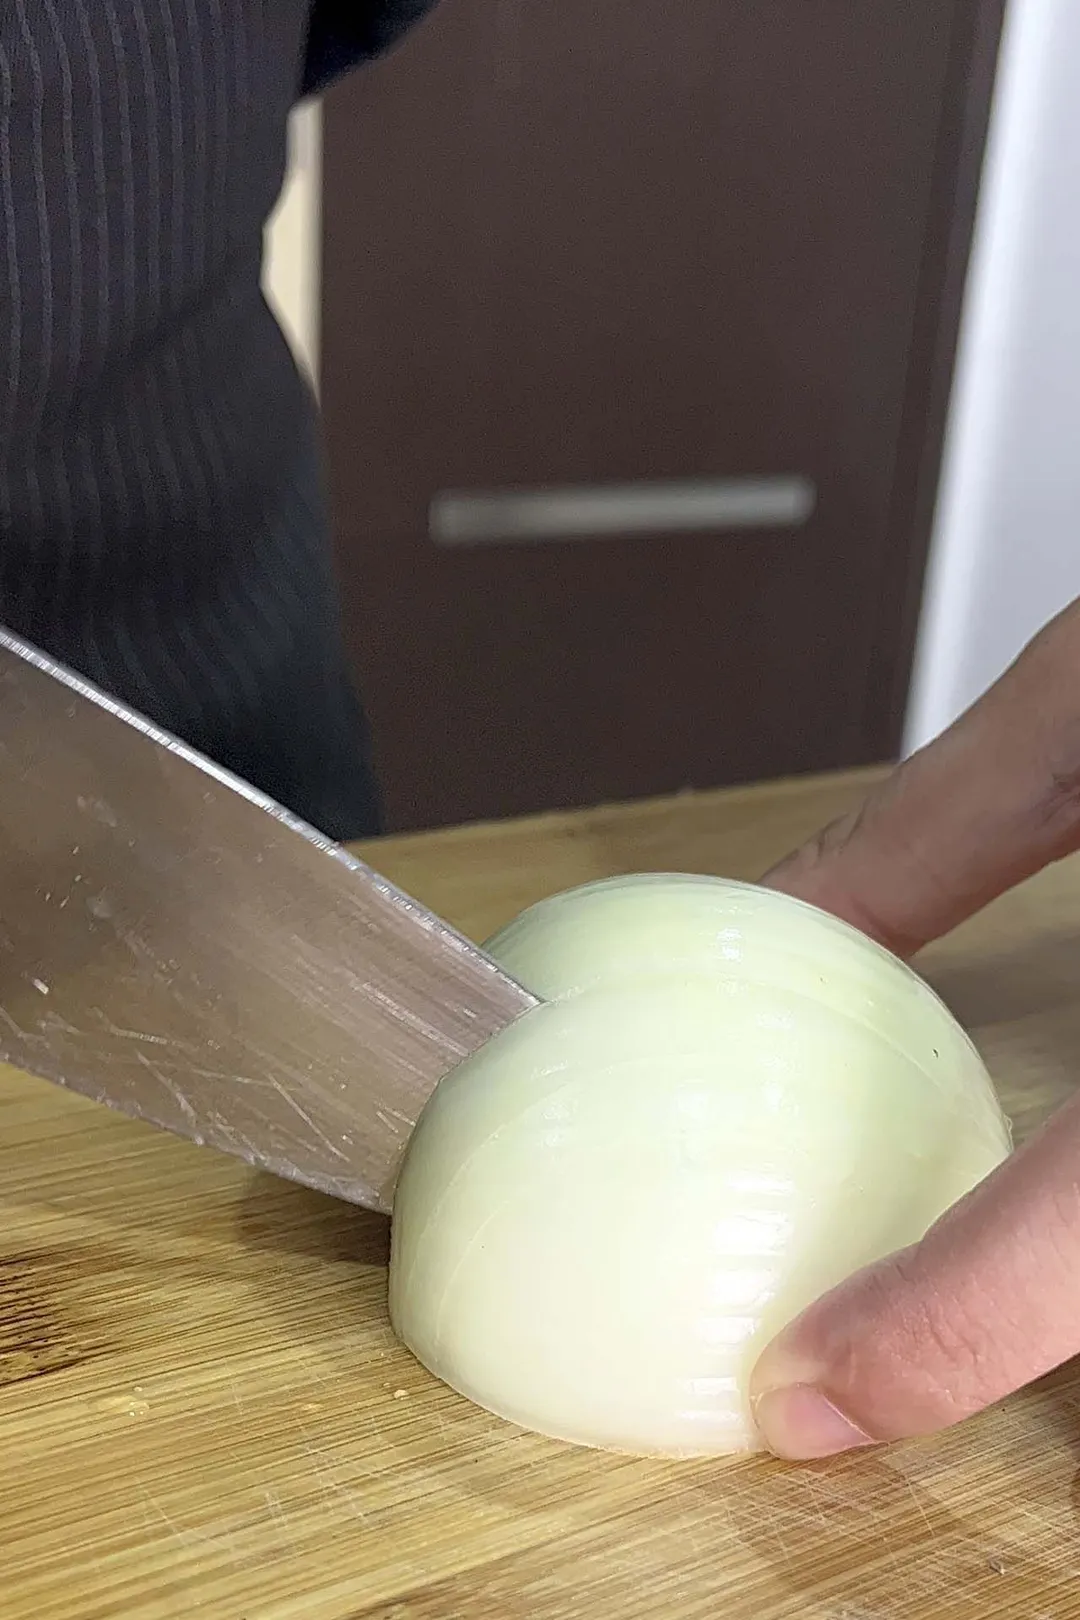 dice a half onion on a cutting board